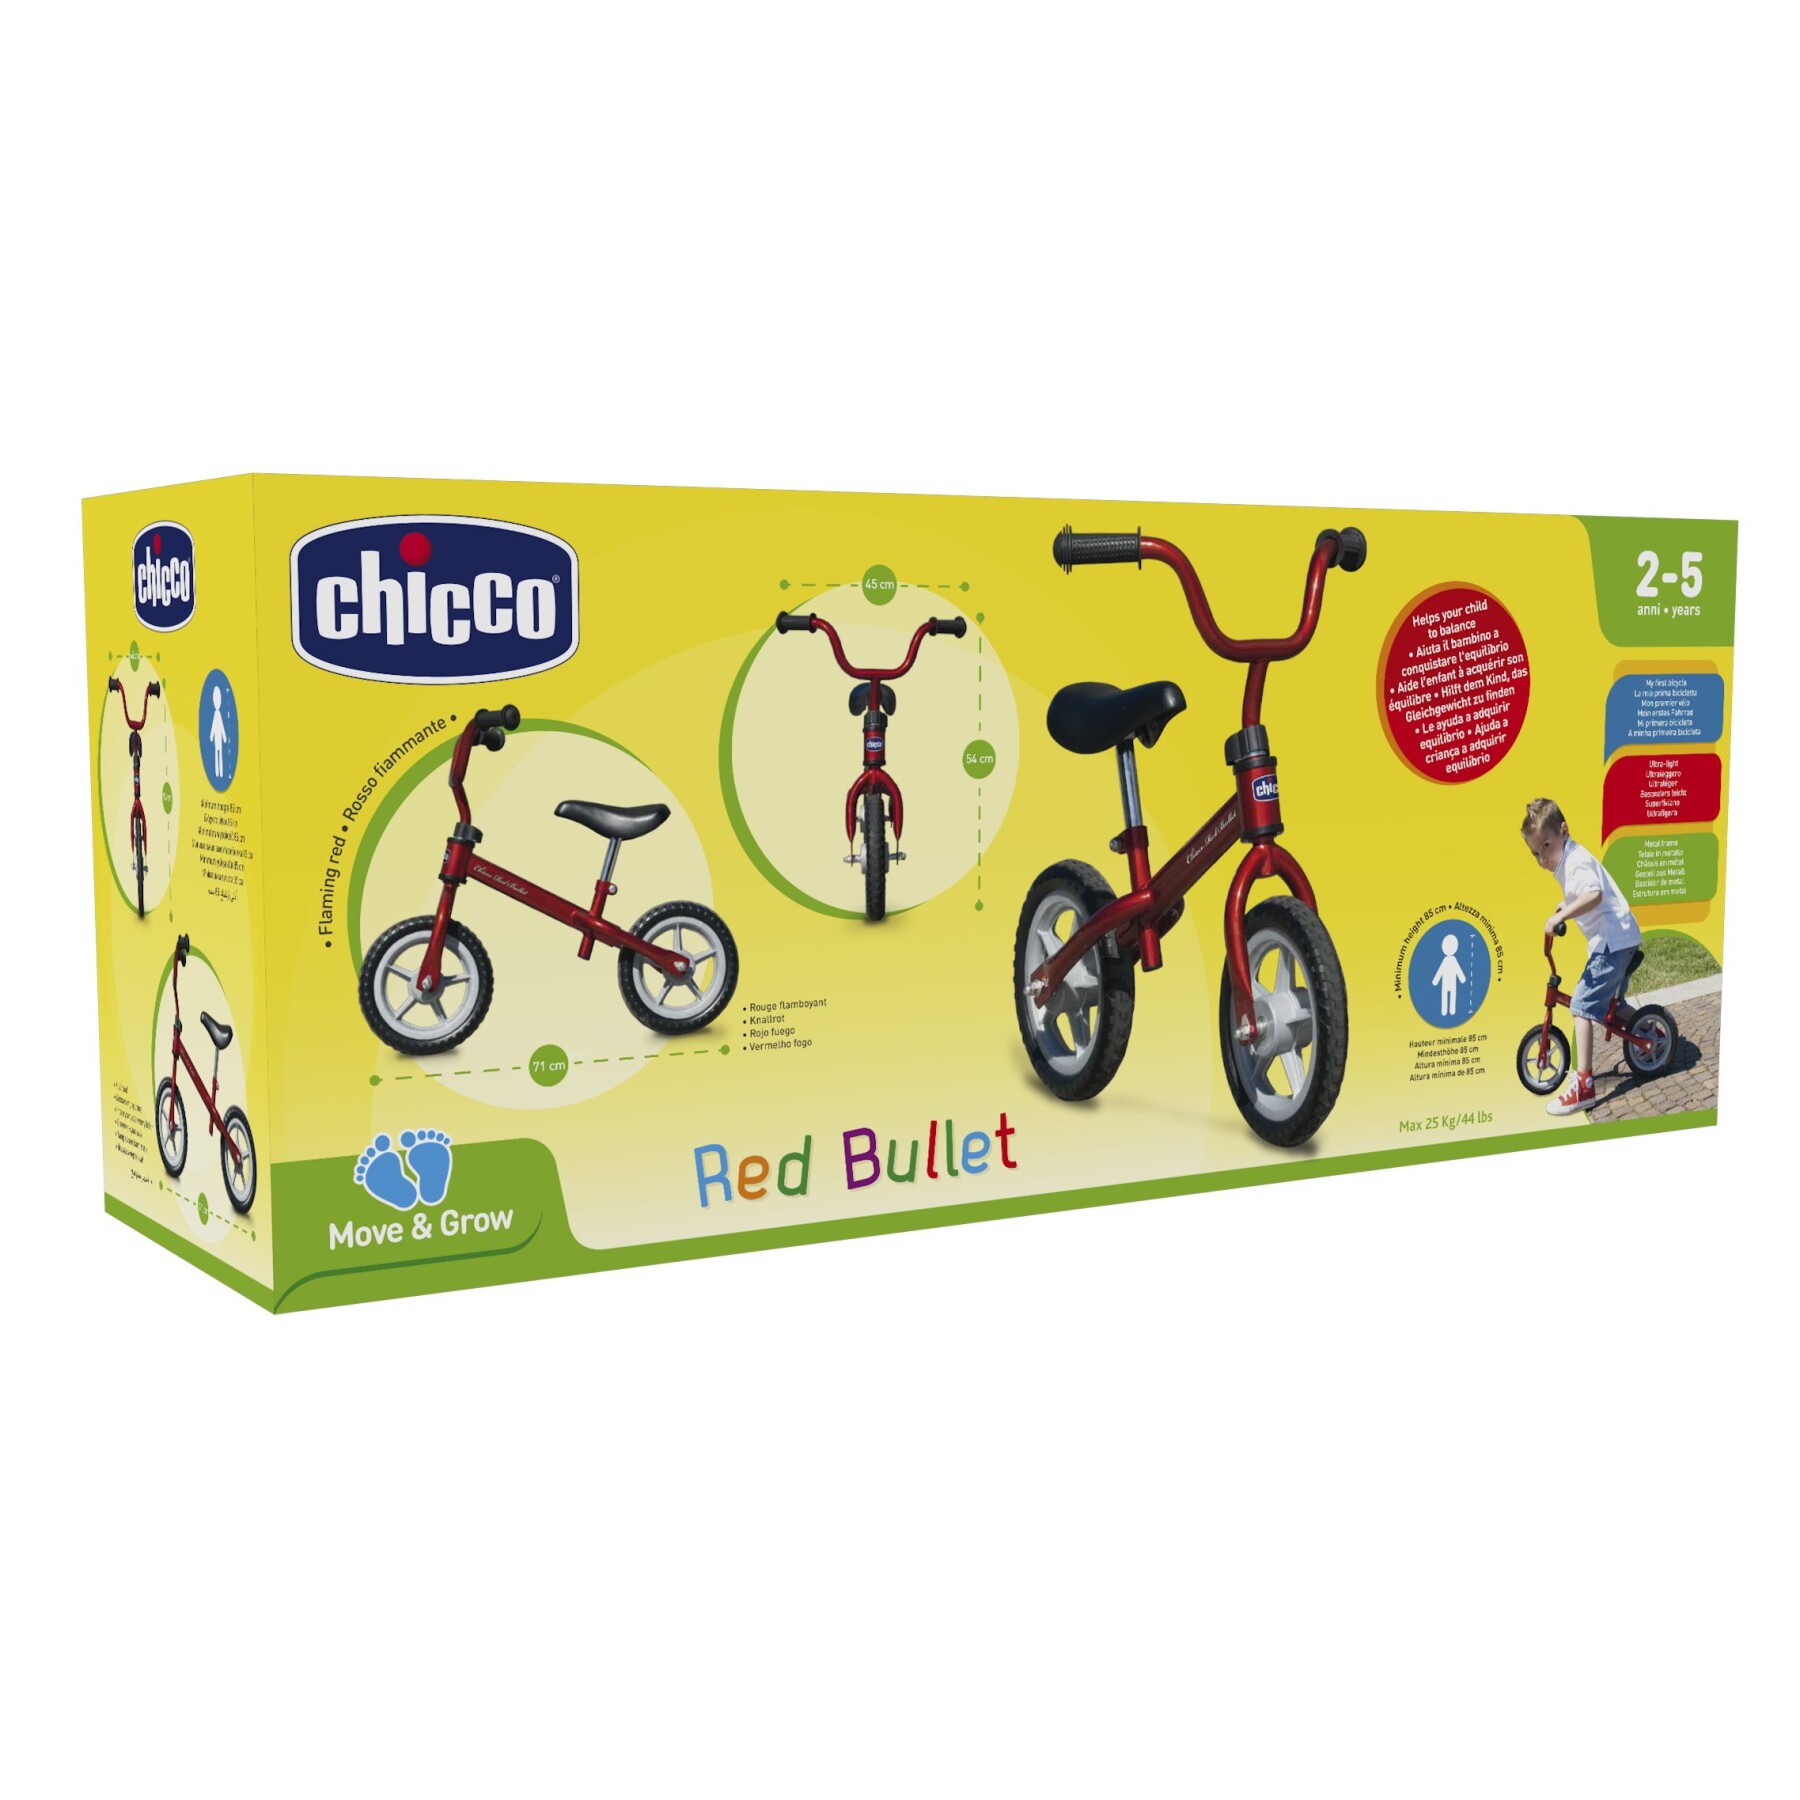 Prima bicicletta red bullet - corsa e crescita per bambini - Chicco